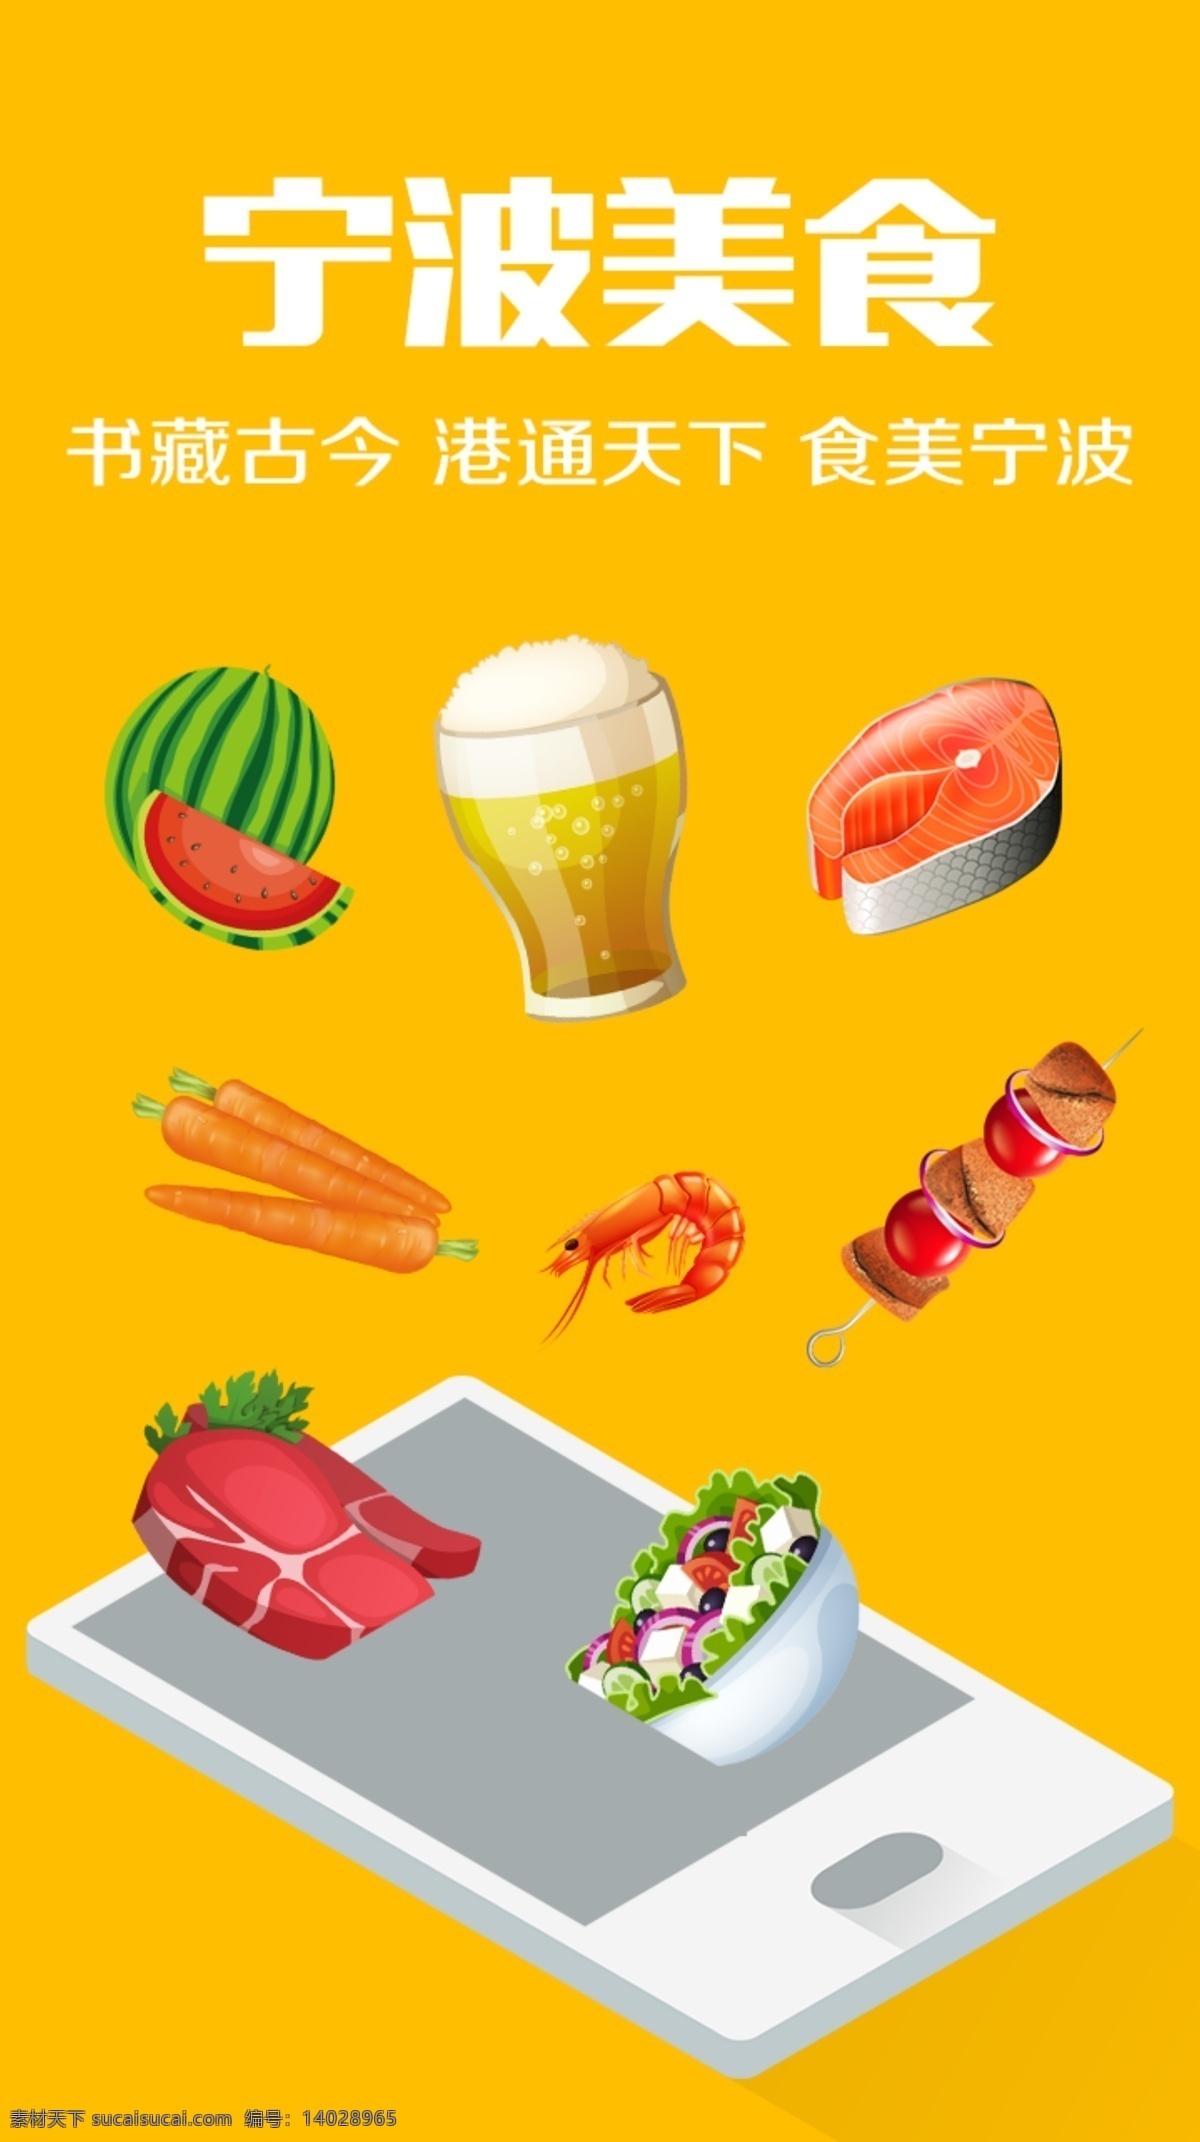 美食 app 引导 页 手机 沙拉 牛排 骨肉相连 虾 胡萝卜 三文鱼 西瓜 啤酒 矢量 卡通 黄色